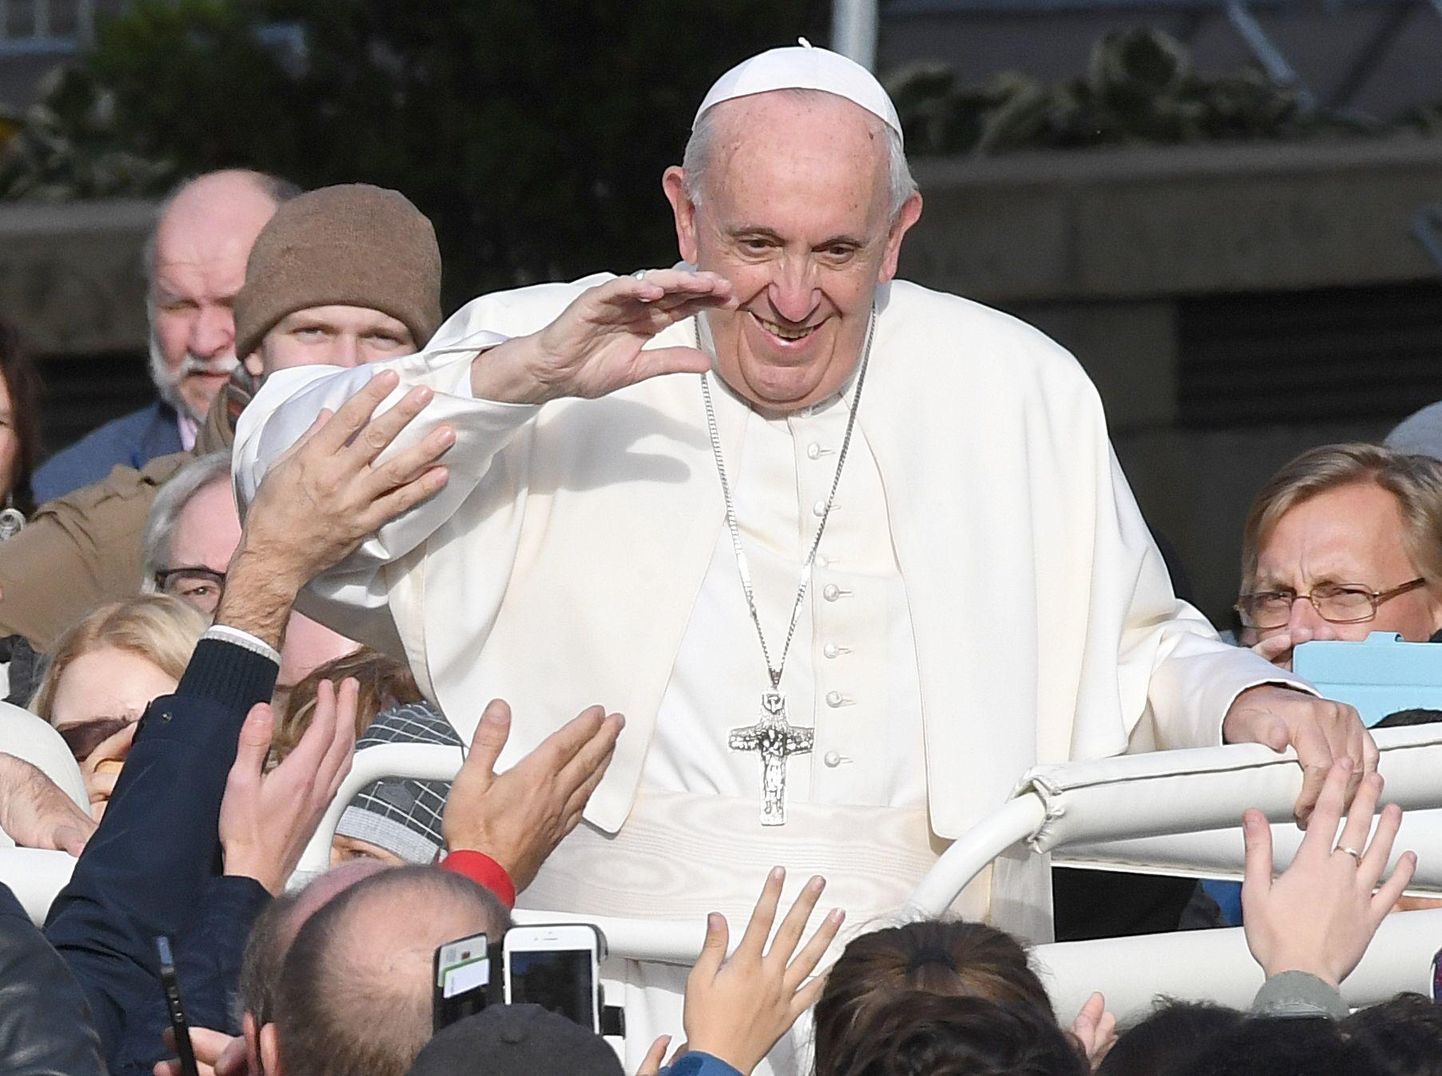 Missale tulnud rahvas tervitab paavsti.